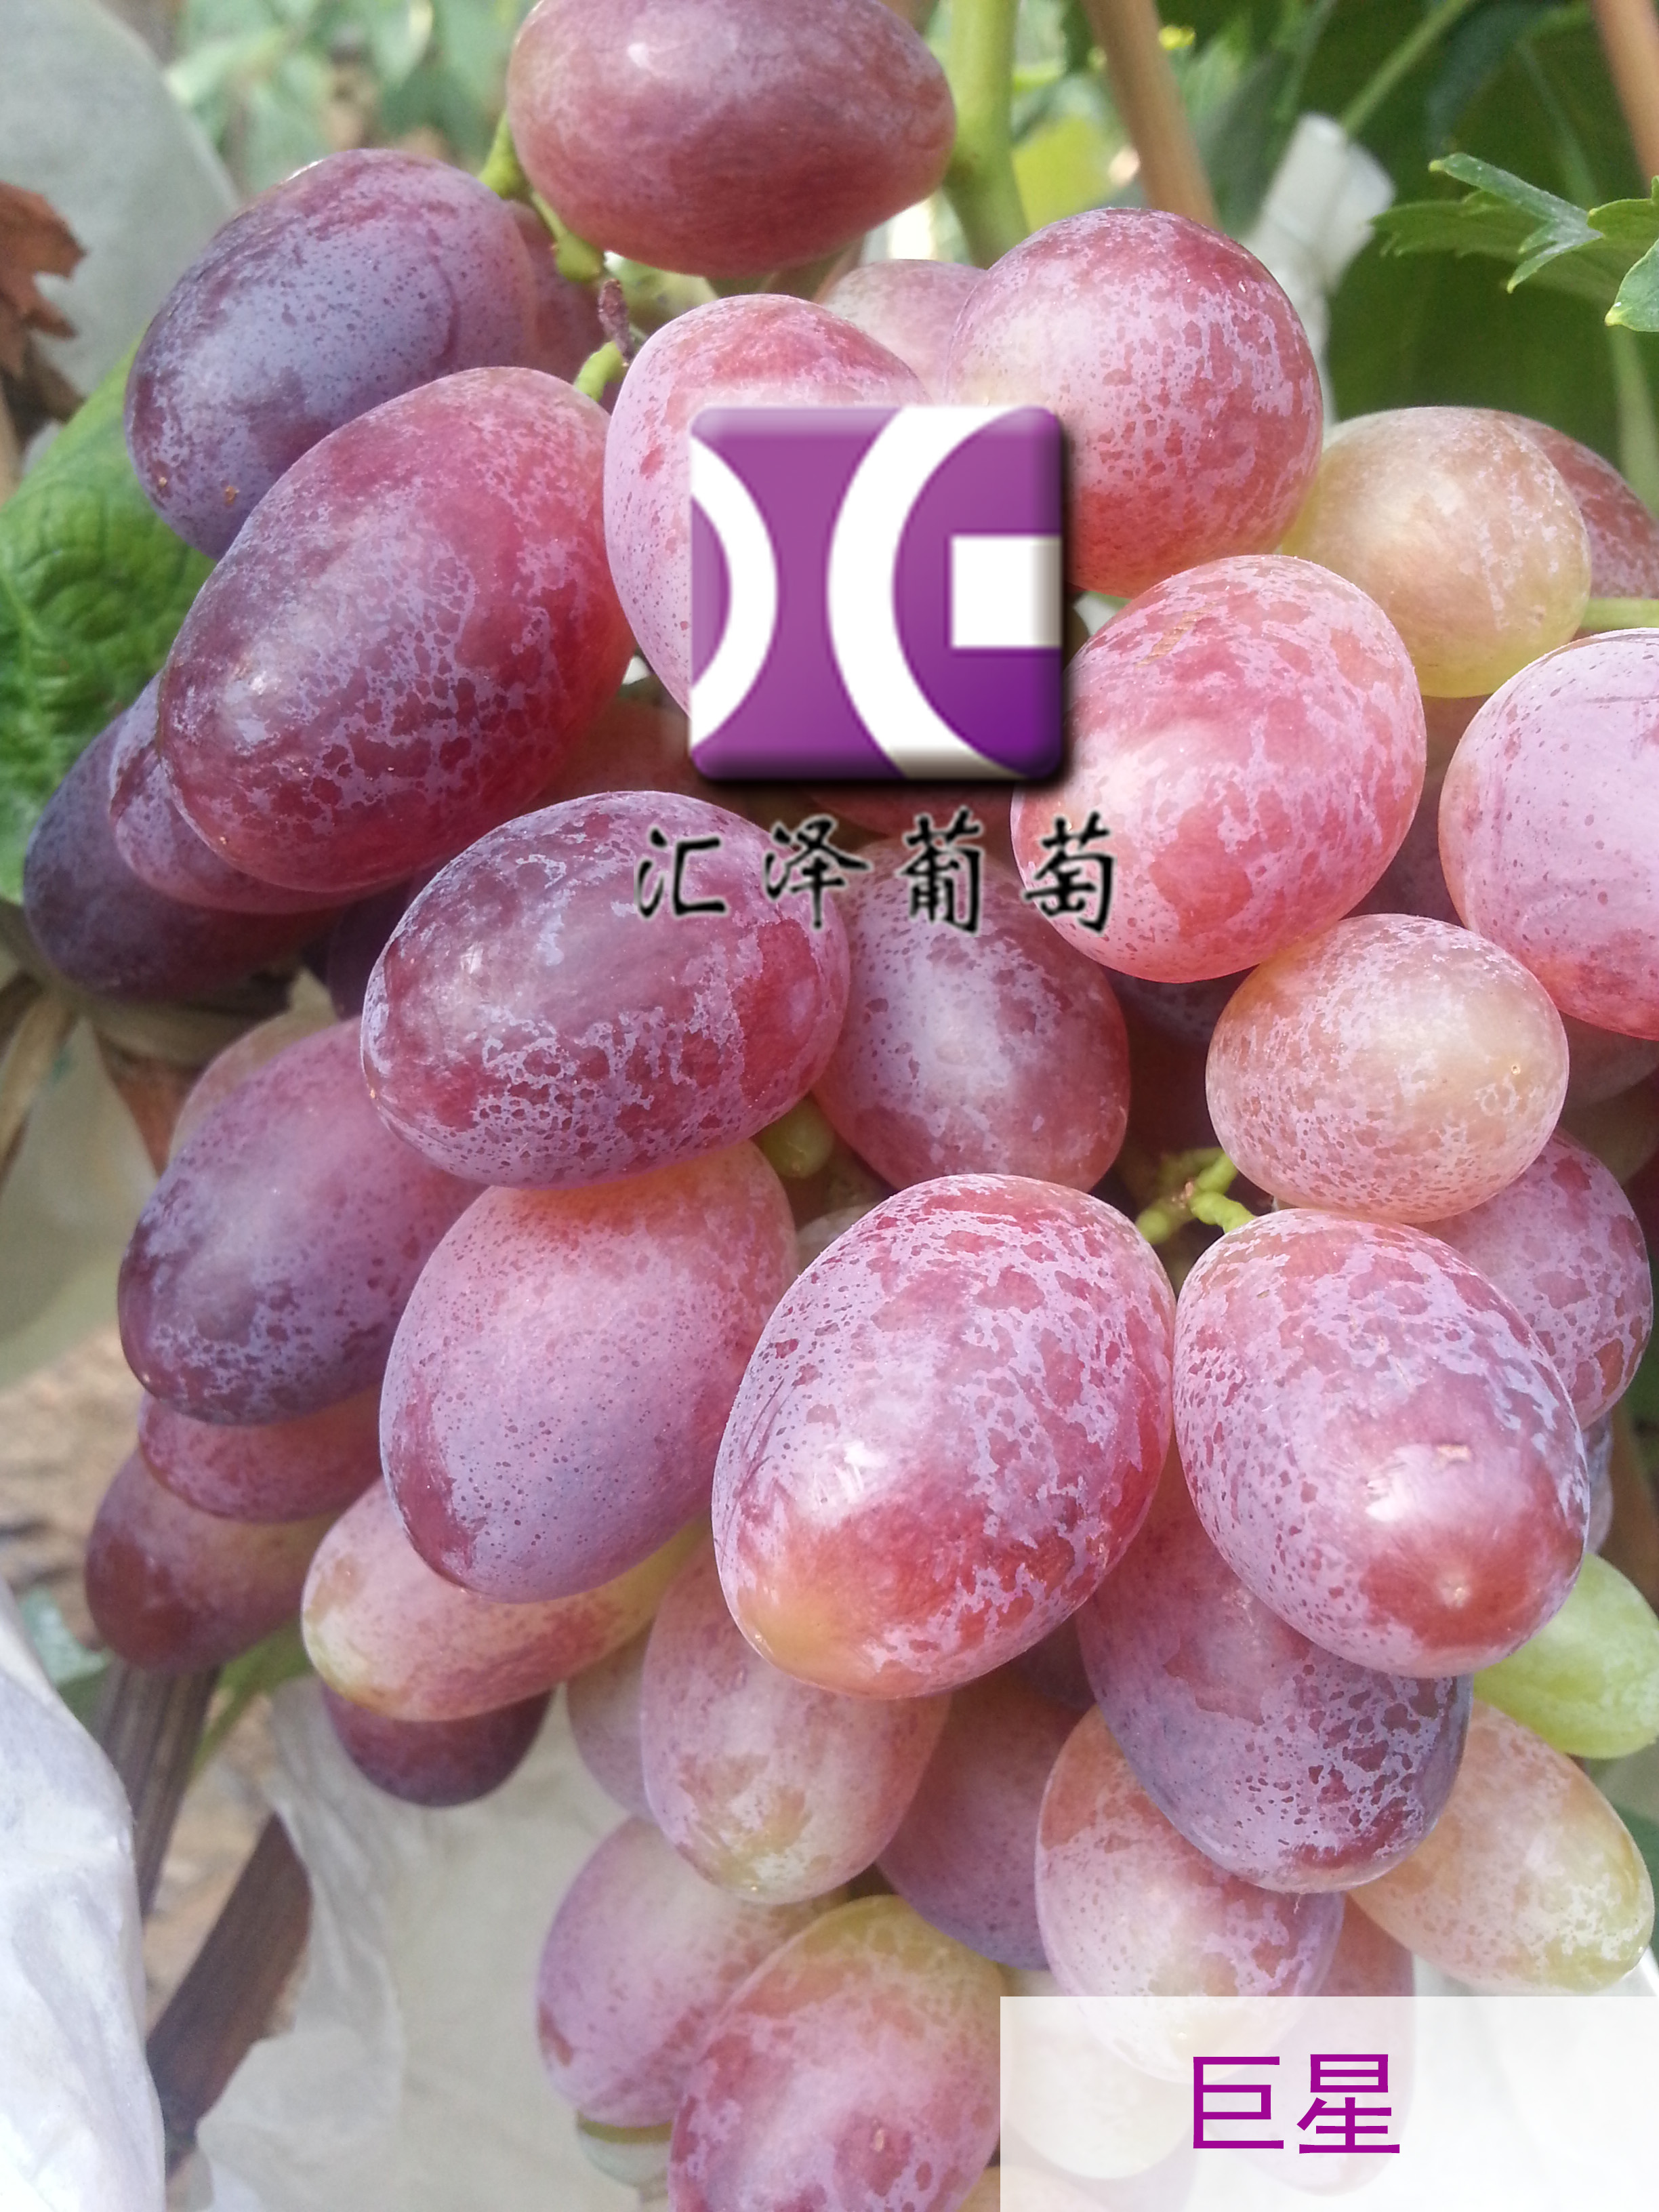 青岛市里扎马特葡萄苗厂家设施种植大粒里扎马特葡萄苗木 大棚种植葡萄